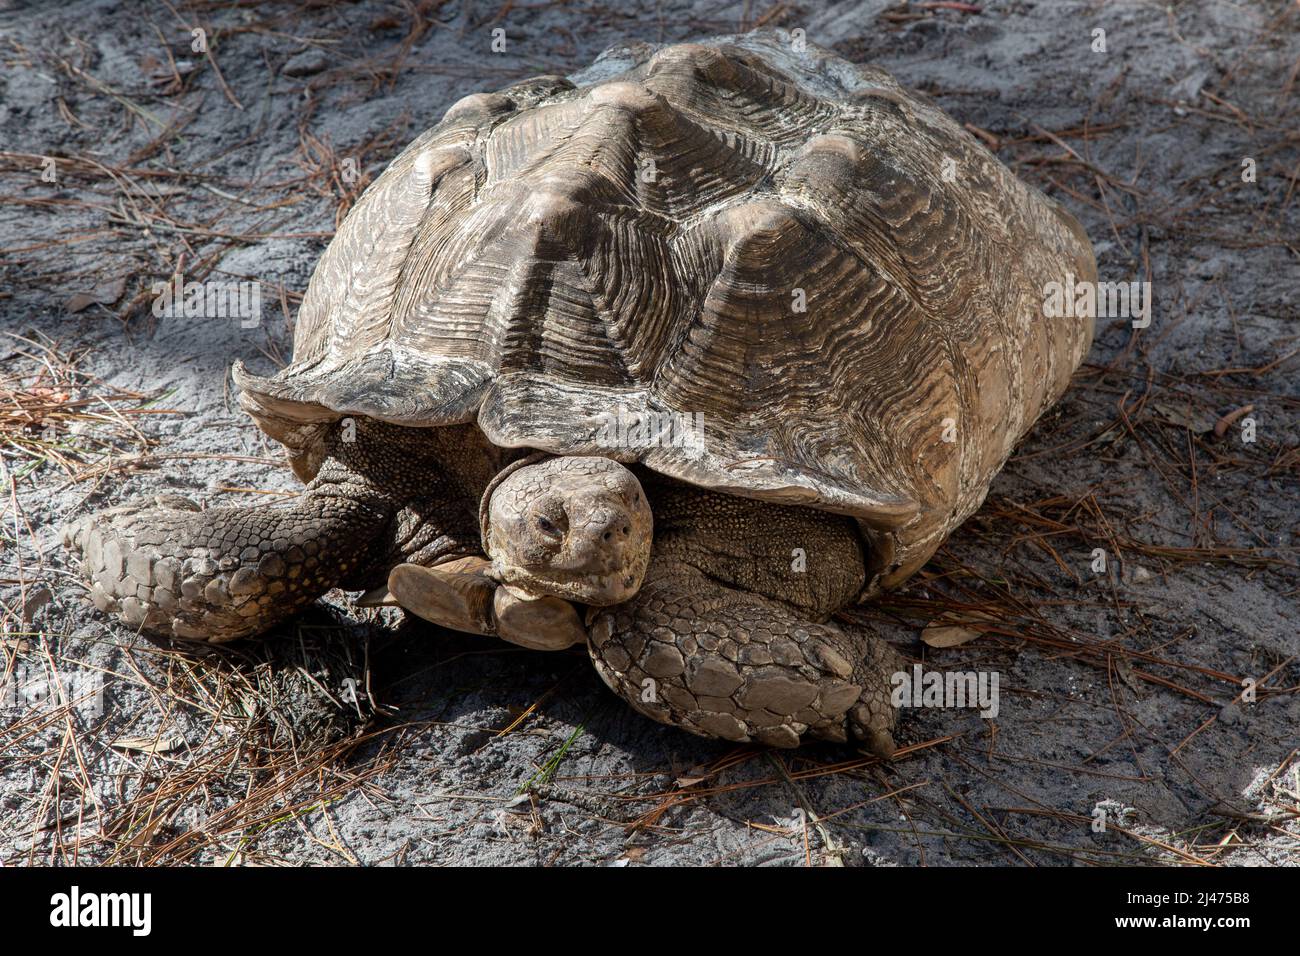 La tortuga africana de la tortuga de la rana en el Centro de Descubrimiento de Reptiles es la tortuga continental más grande Foto de stock